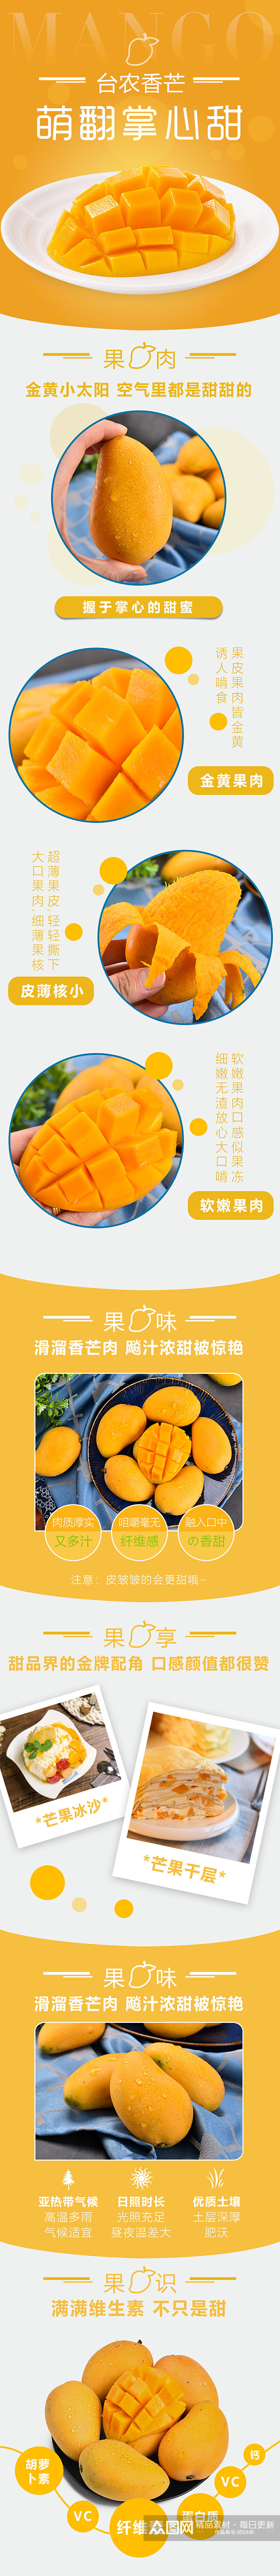 小台农芒果水果美食淘宝电商黄色清新详情页素材